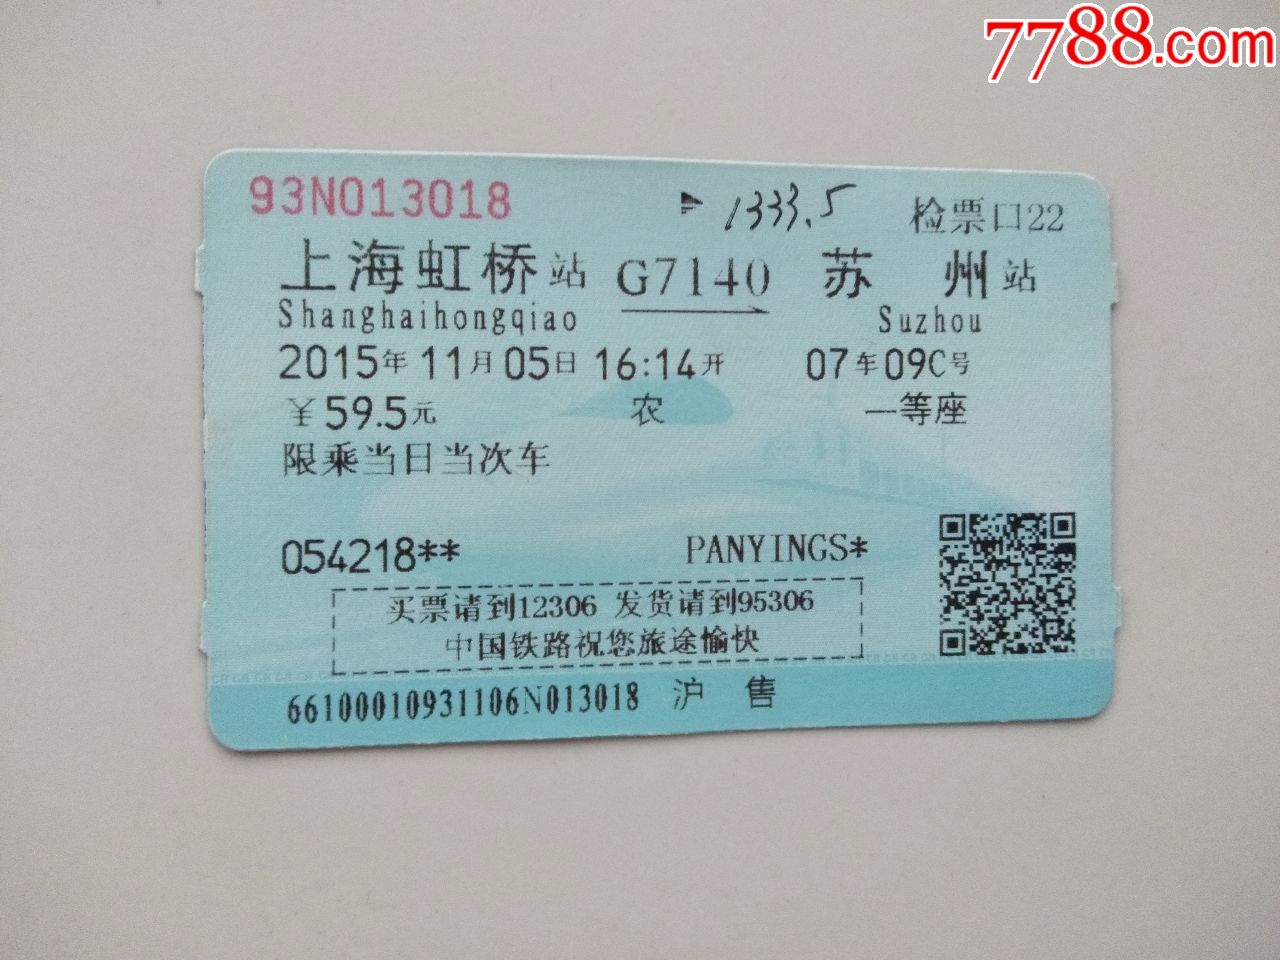 上海虹桥-G7140次-苏州